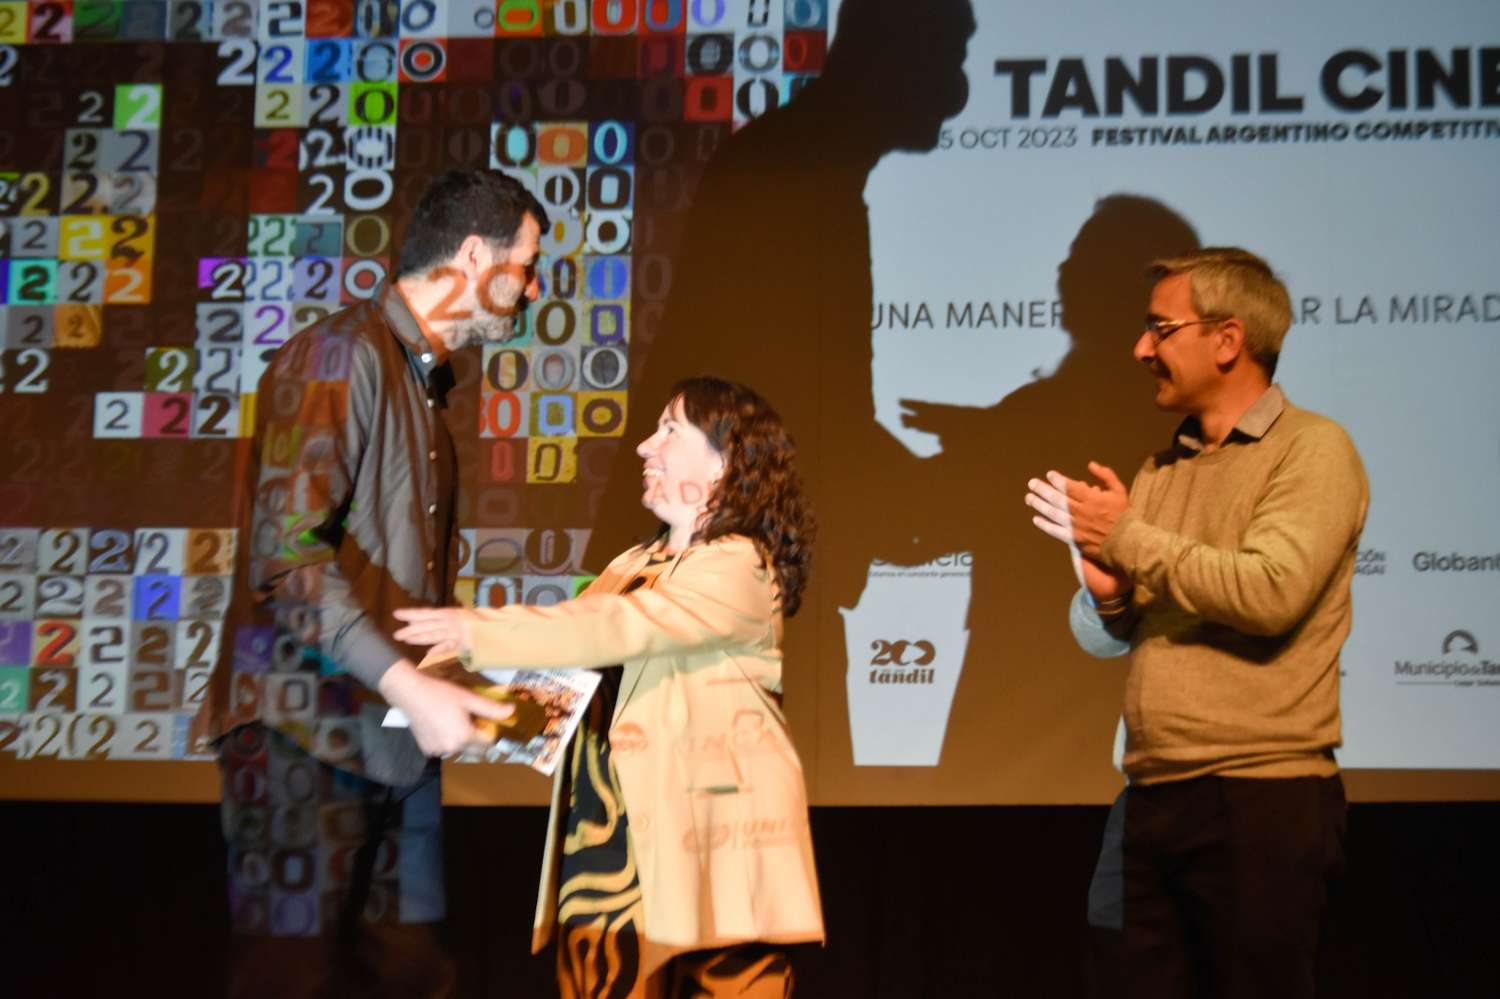 20mo Tandil Cine: un festival con una propuesta federal que no para de "ampliar la mirada"